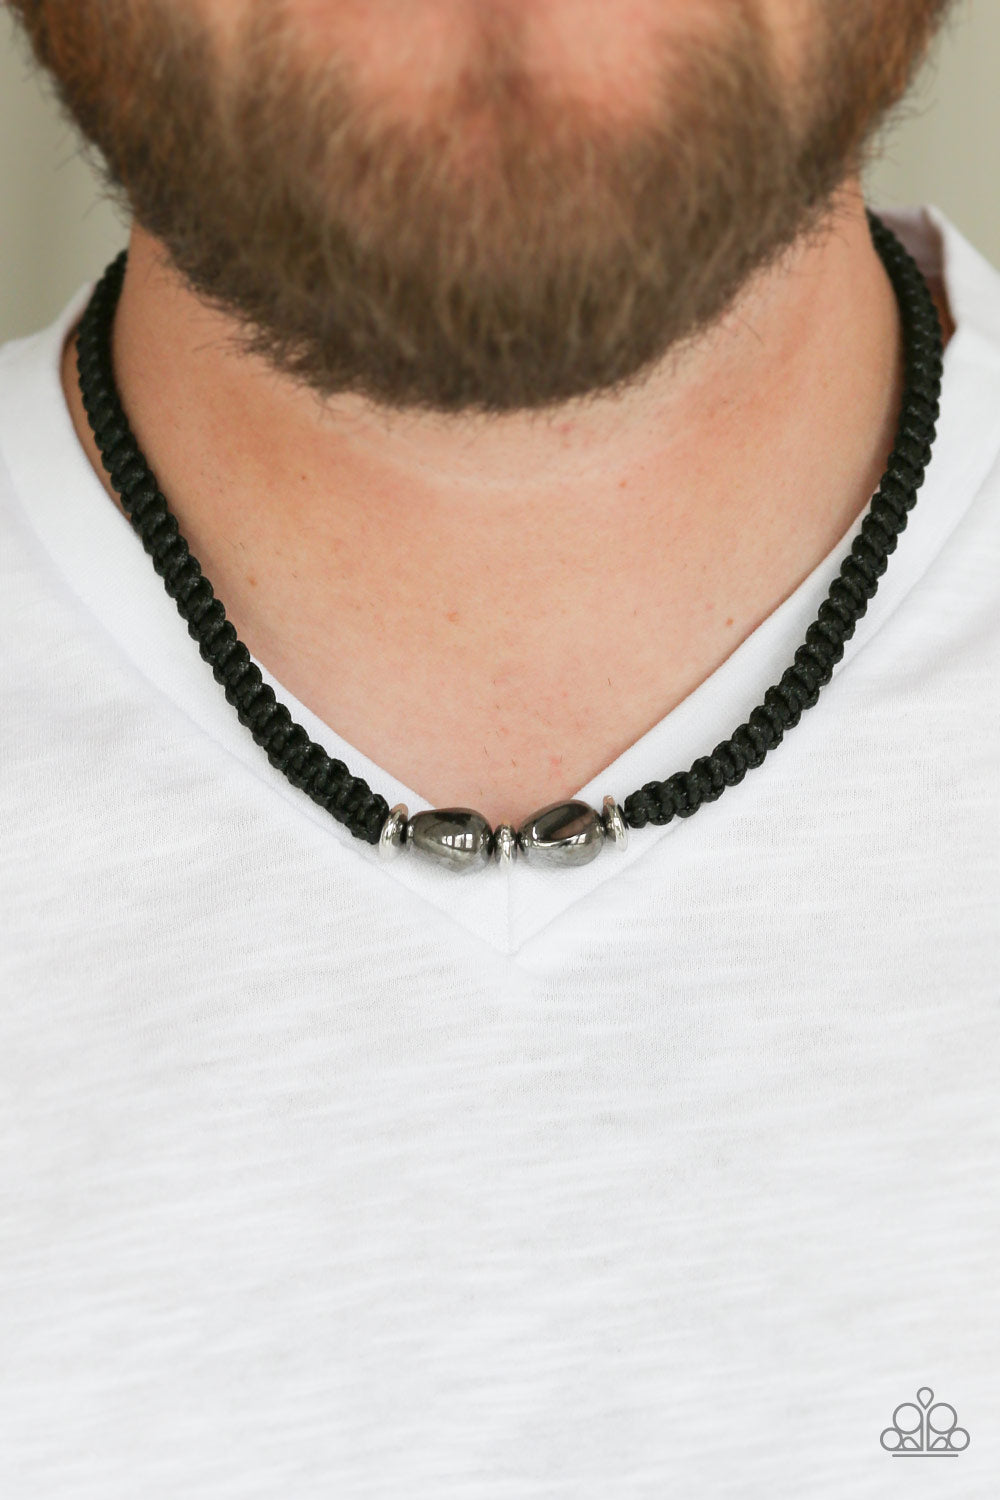 Paparazzi Urban Explorer - Silver - Gunmetal - Braided Cord - Urban Necklace - $5 Jewelry with Ashley Swint